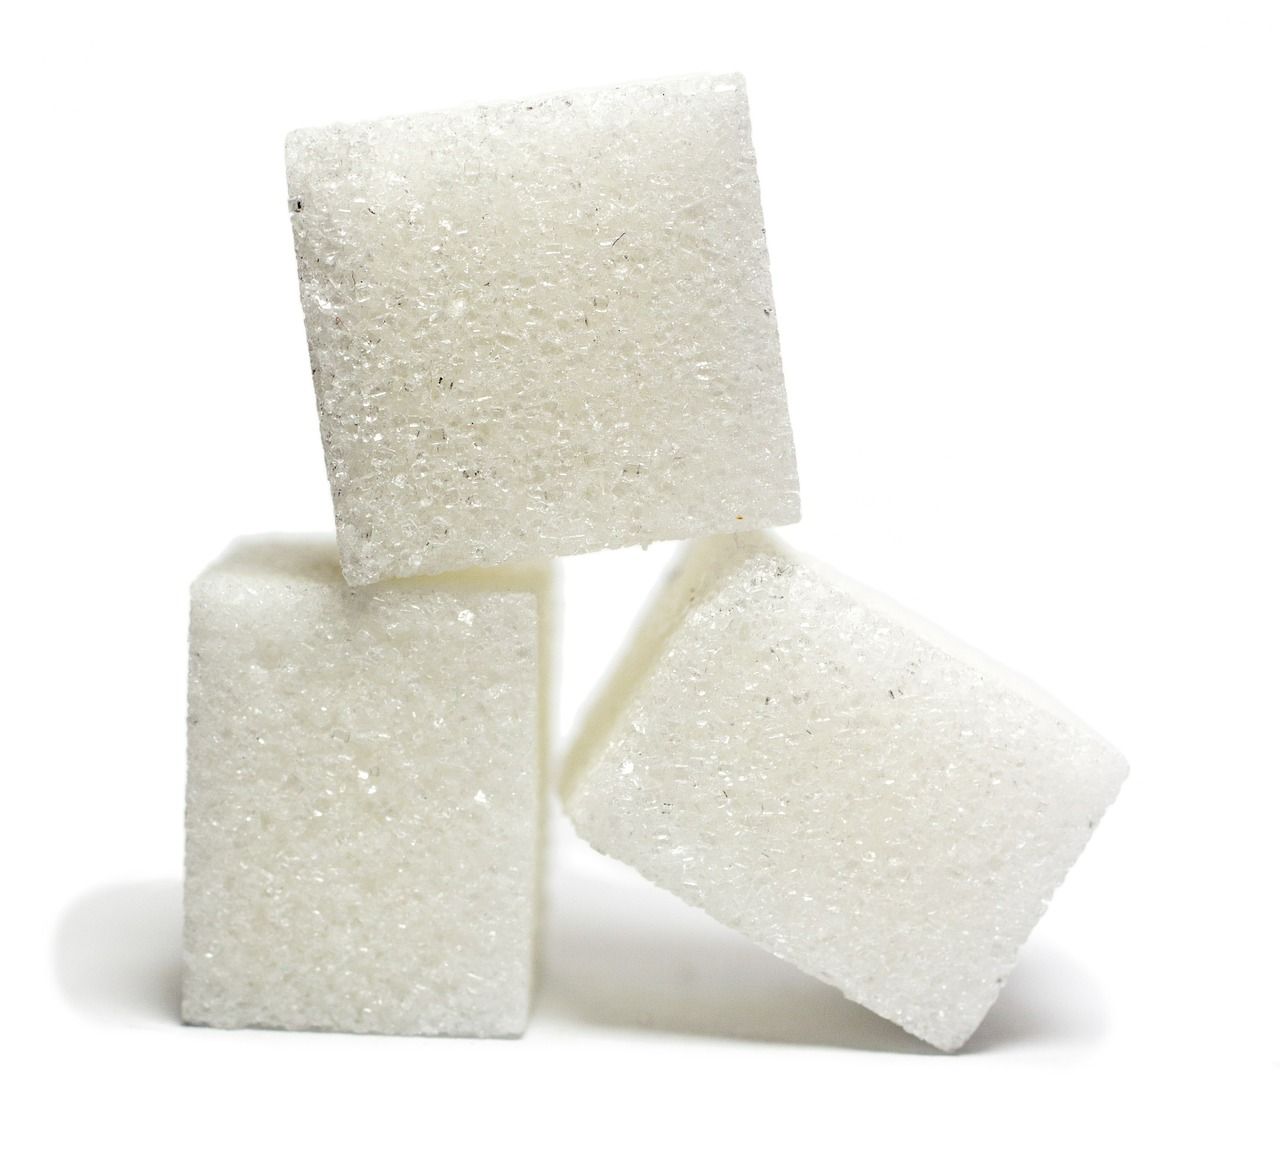 Syrop glukozowo-fruktozowy – tani zamiennik cukru, którego warto unikać